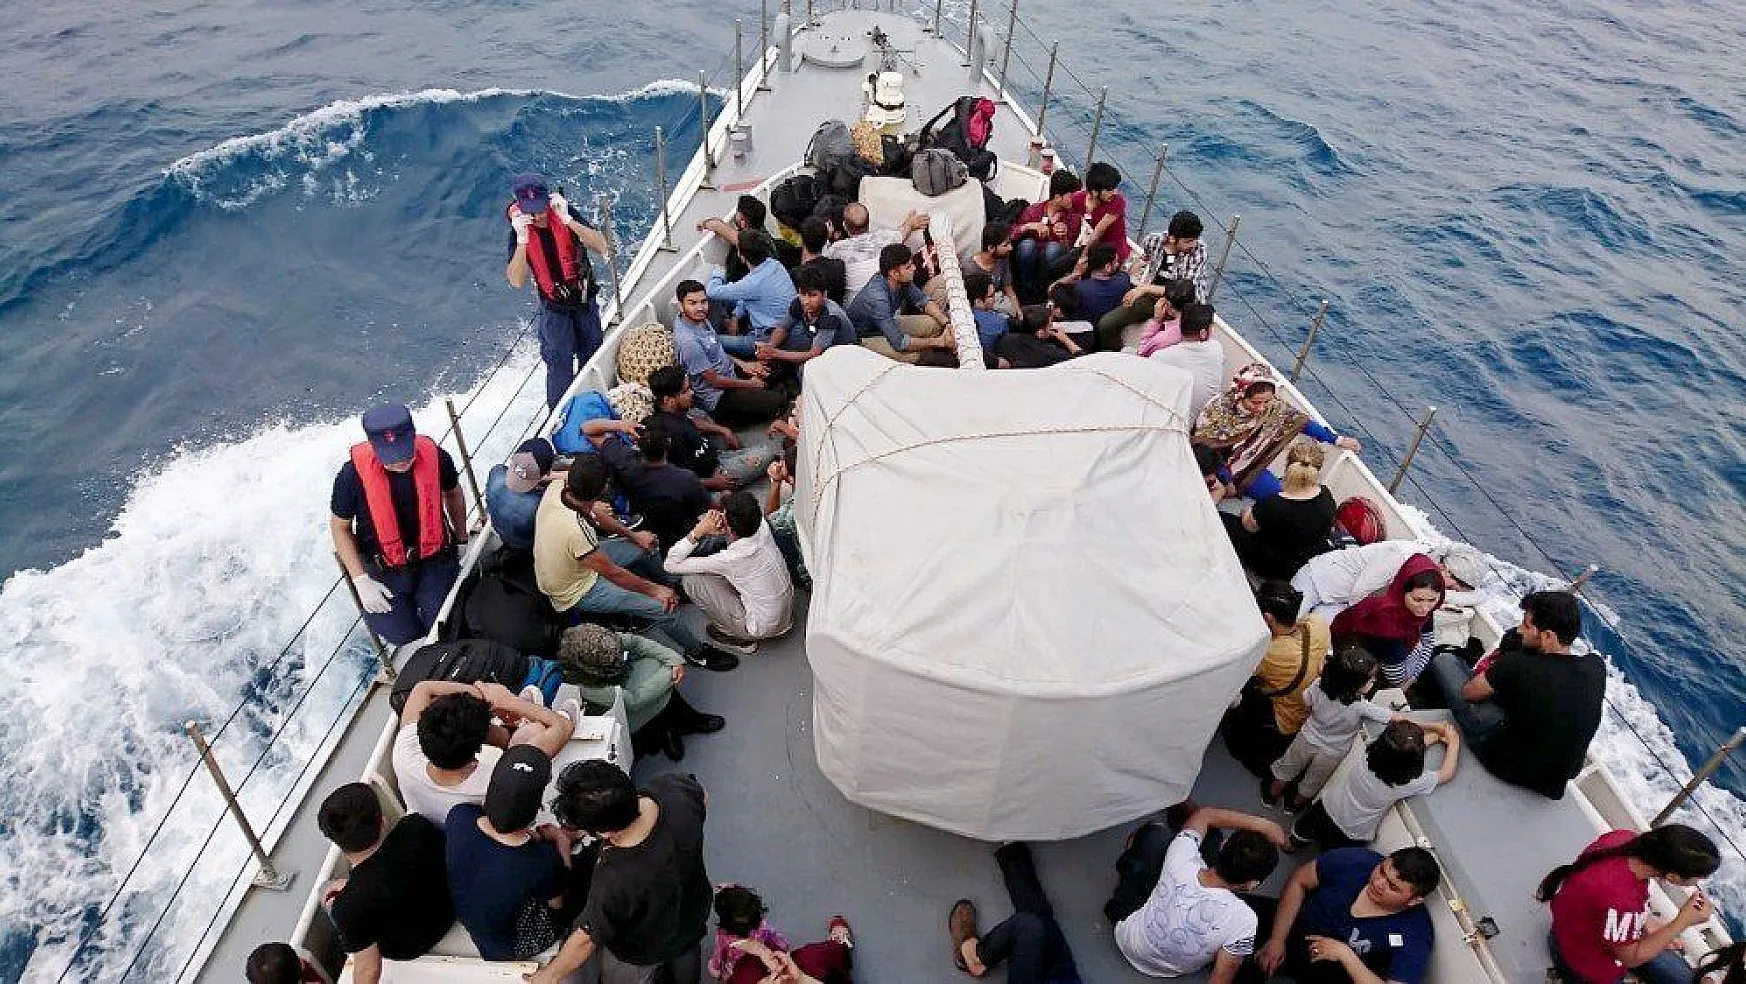 Fethiye'de 114 kaçak göçmen yakalandı